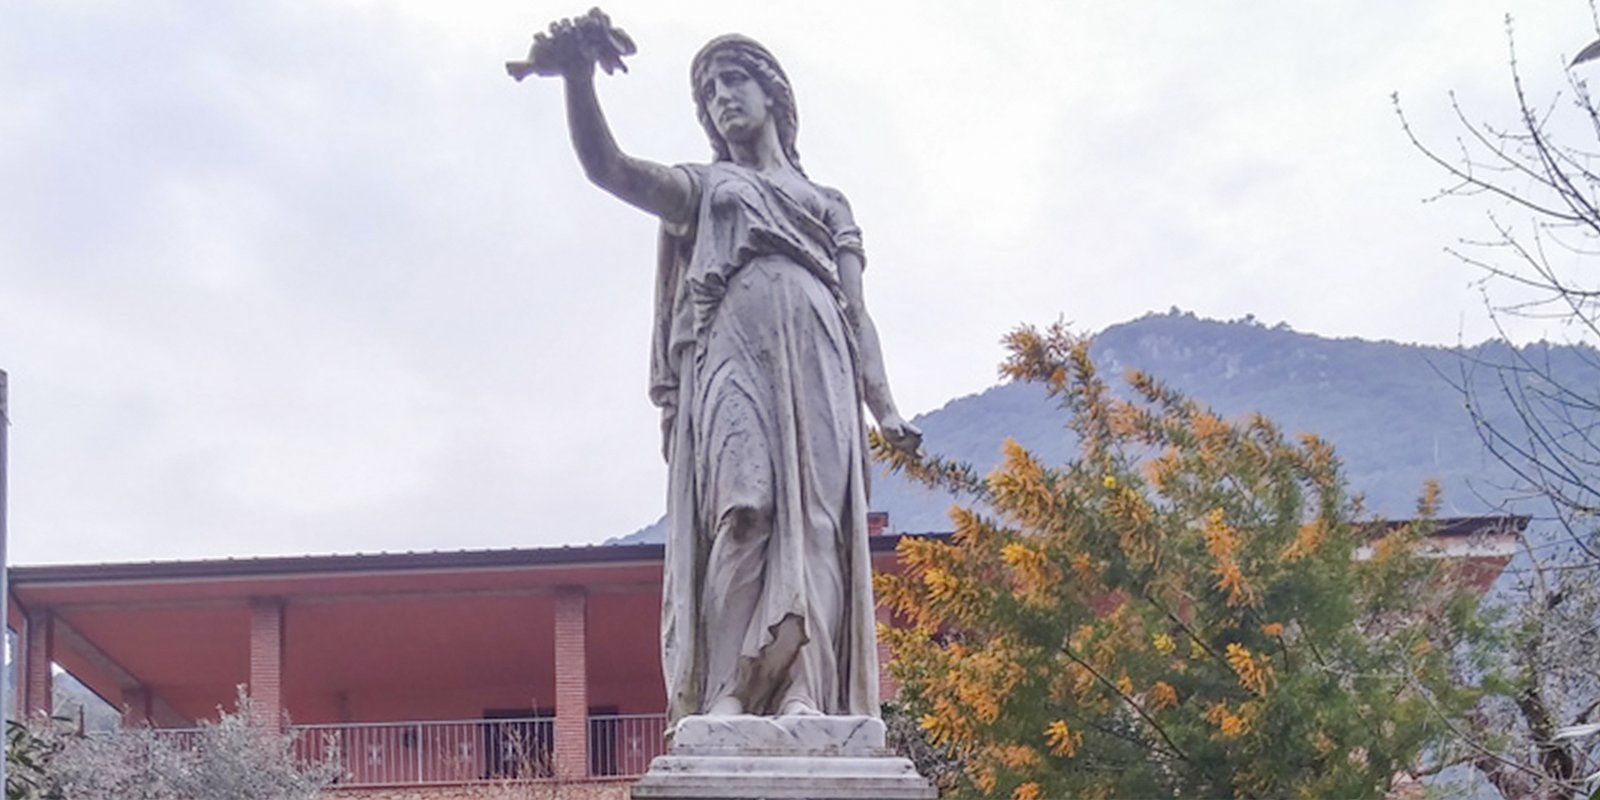 Il Monumento ai Caduti a Valdicastello Carducci